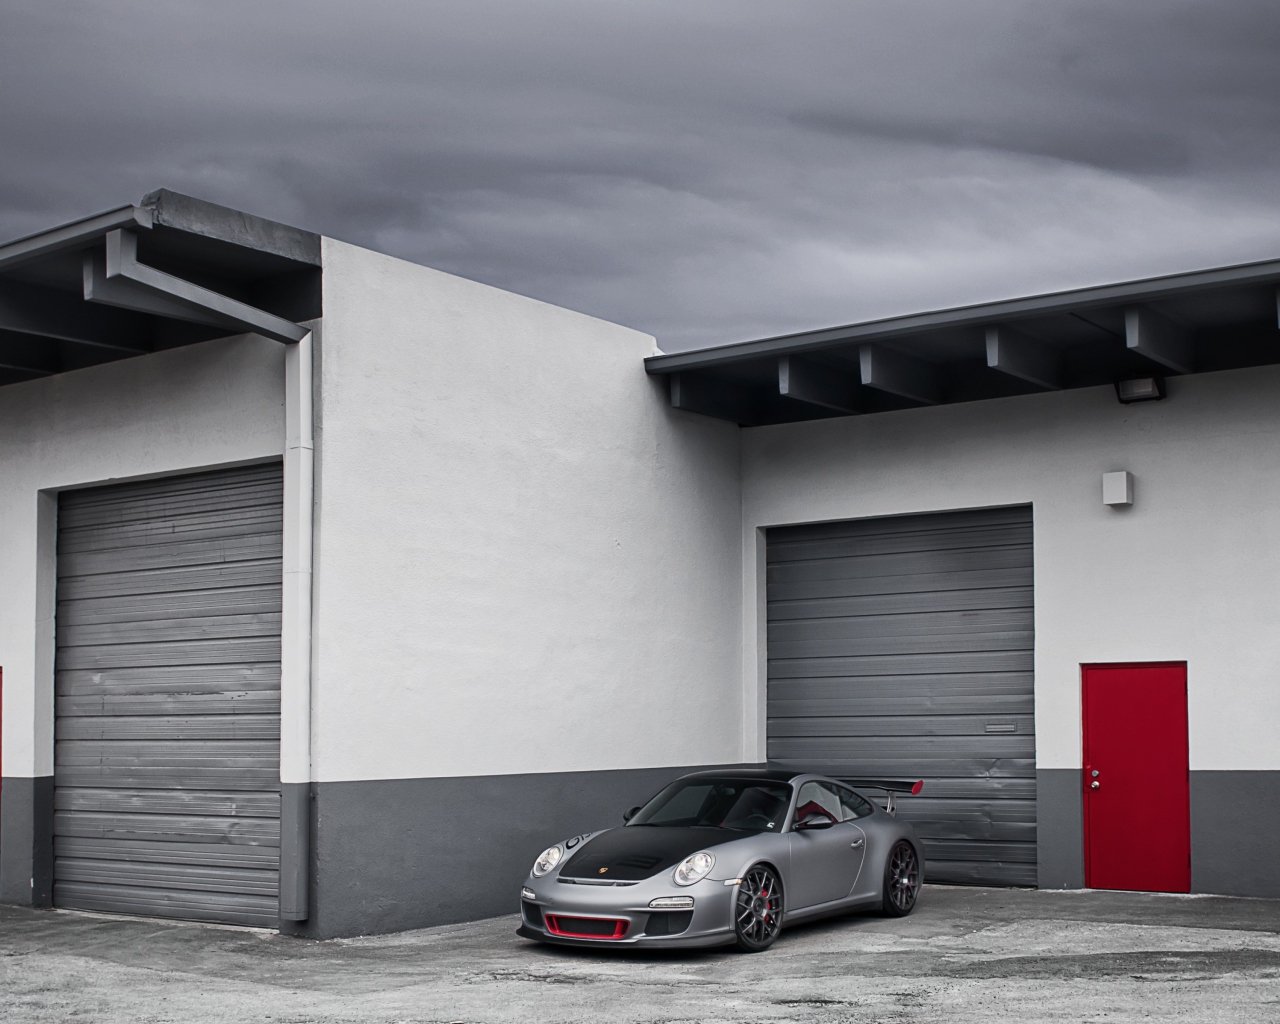 Porsche 911 Near Garage screenshot #1 1280x1024